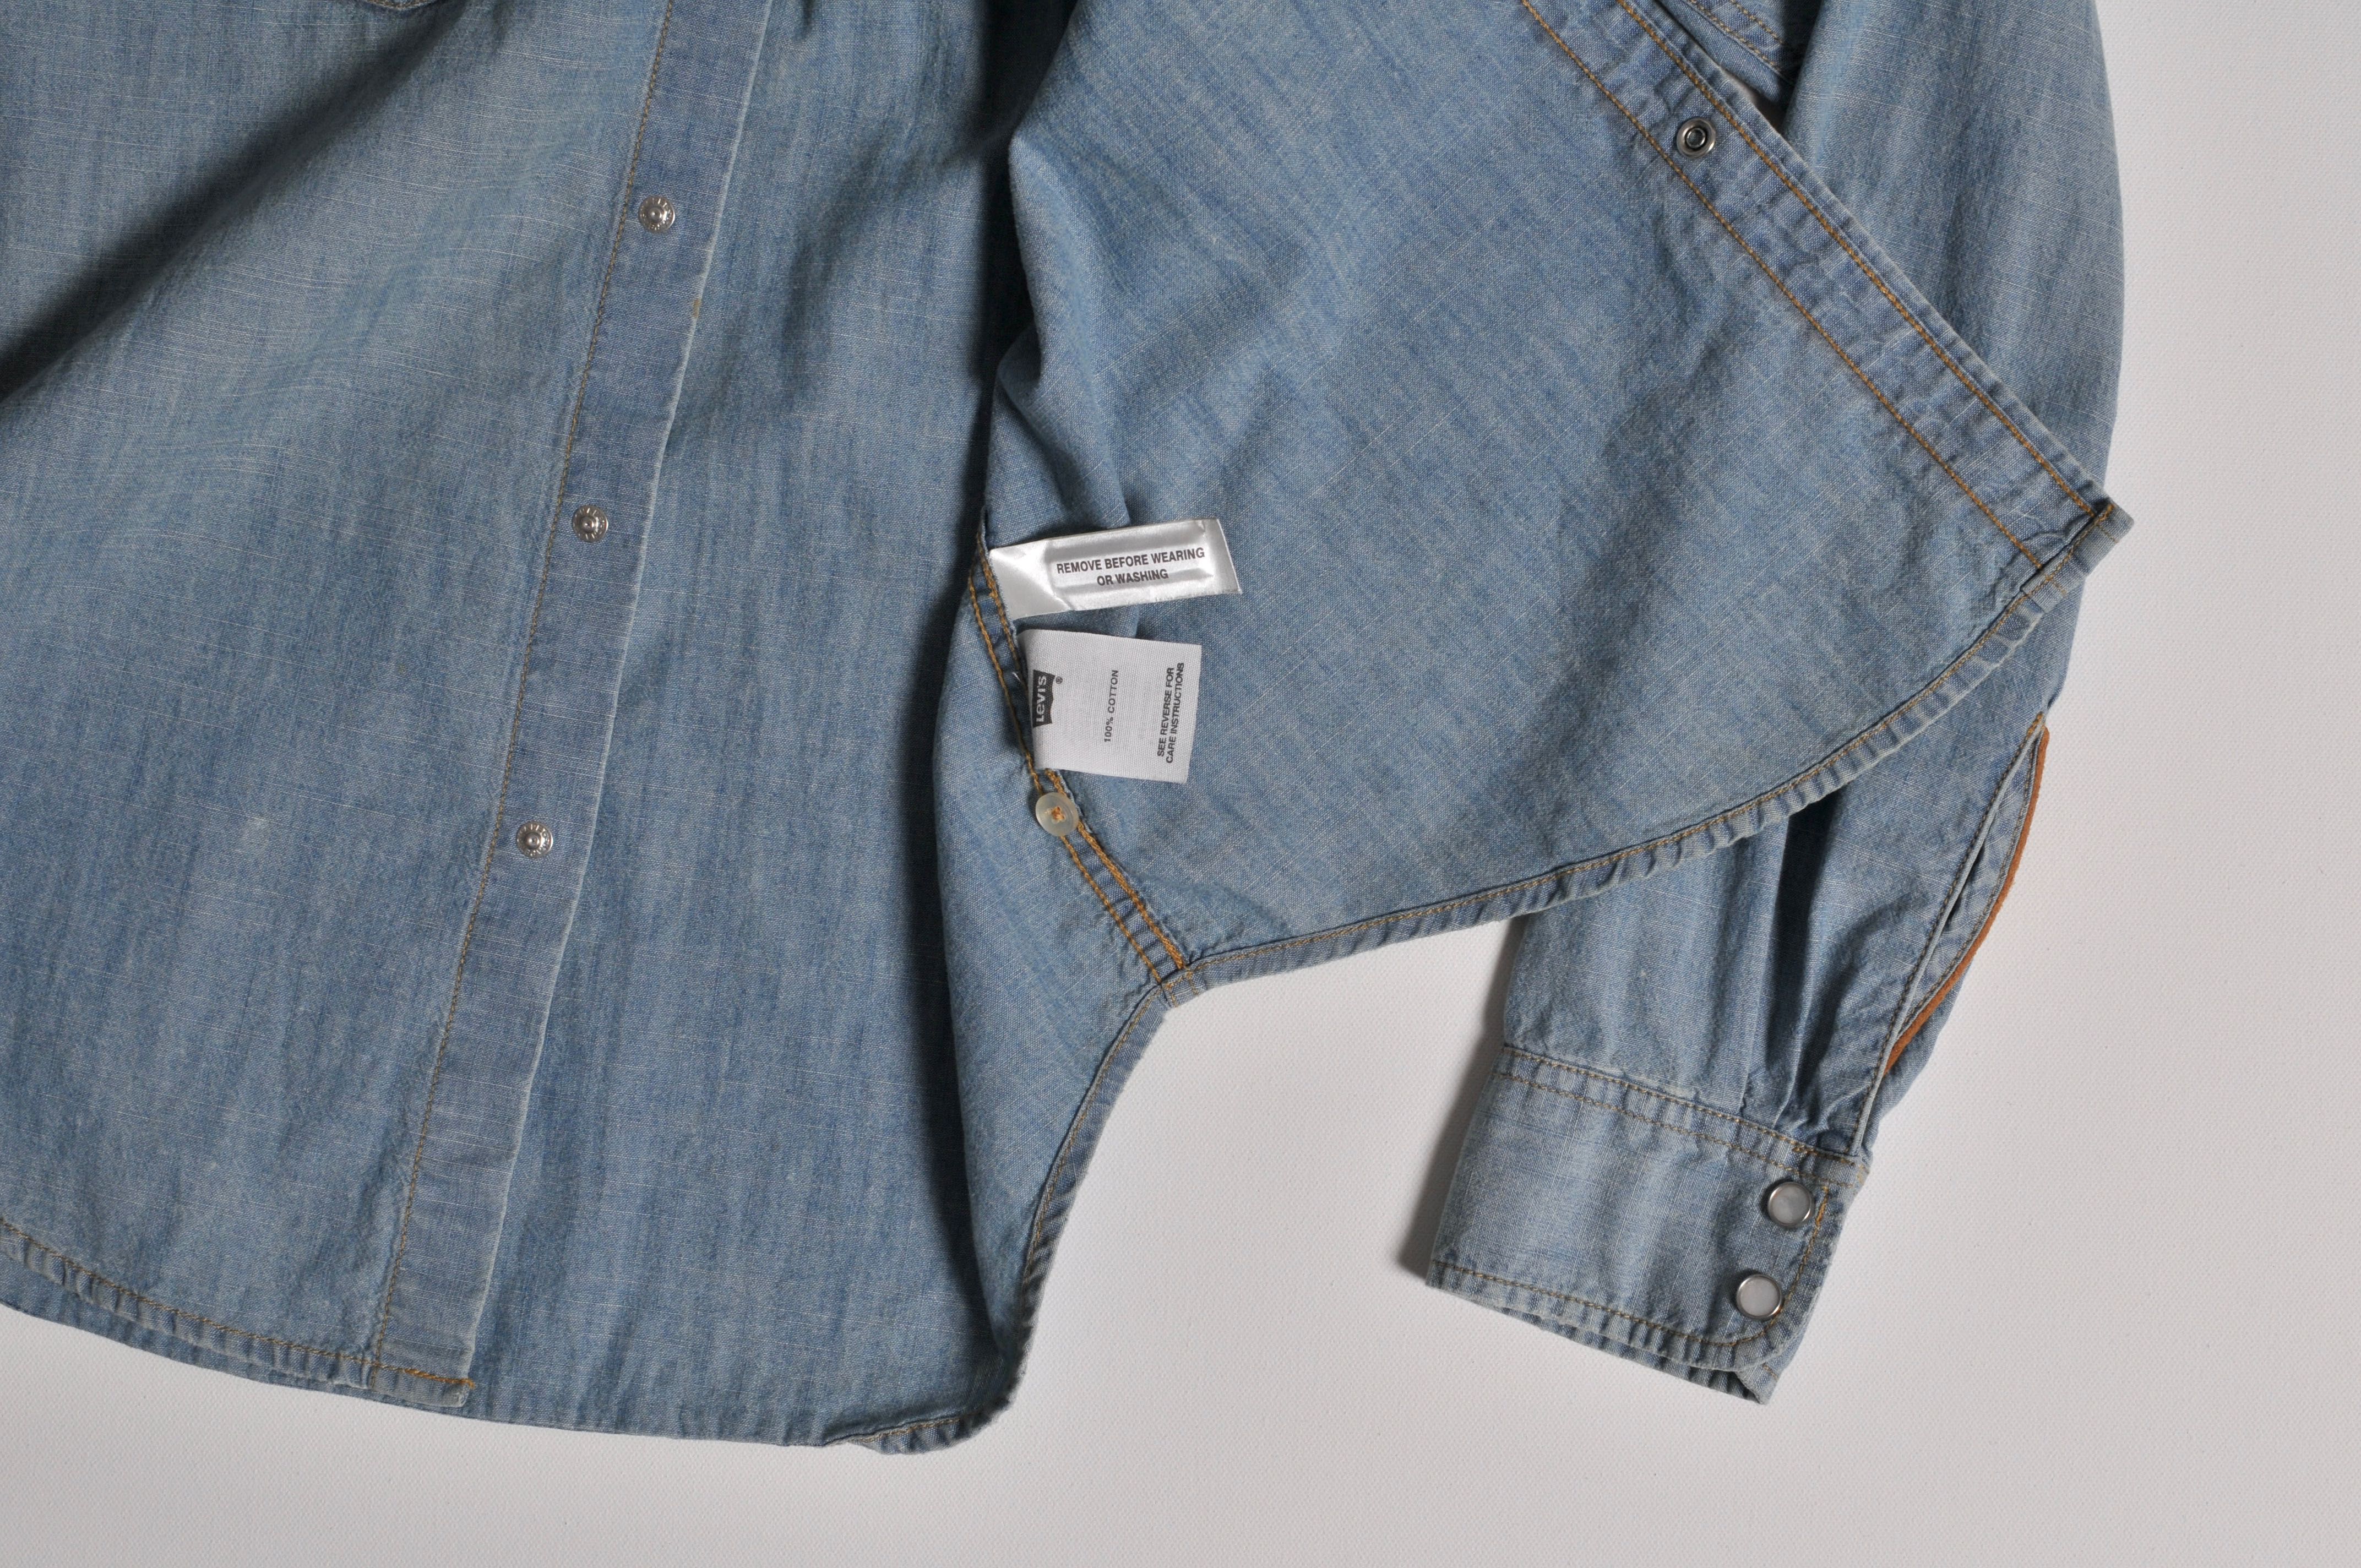 Koszula meska jeans marki Levis, rozmiar S, USA